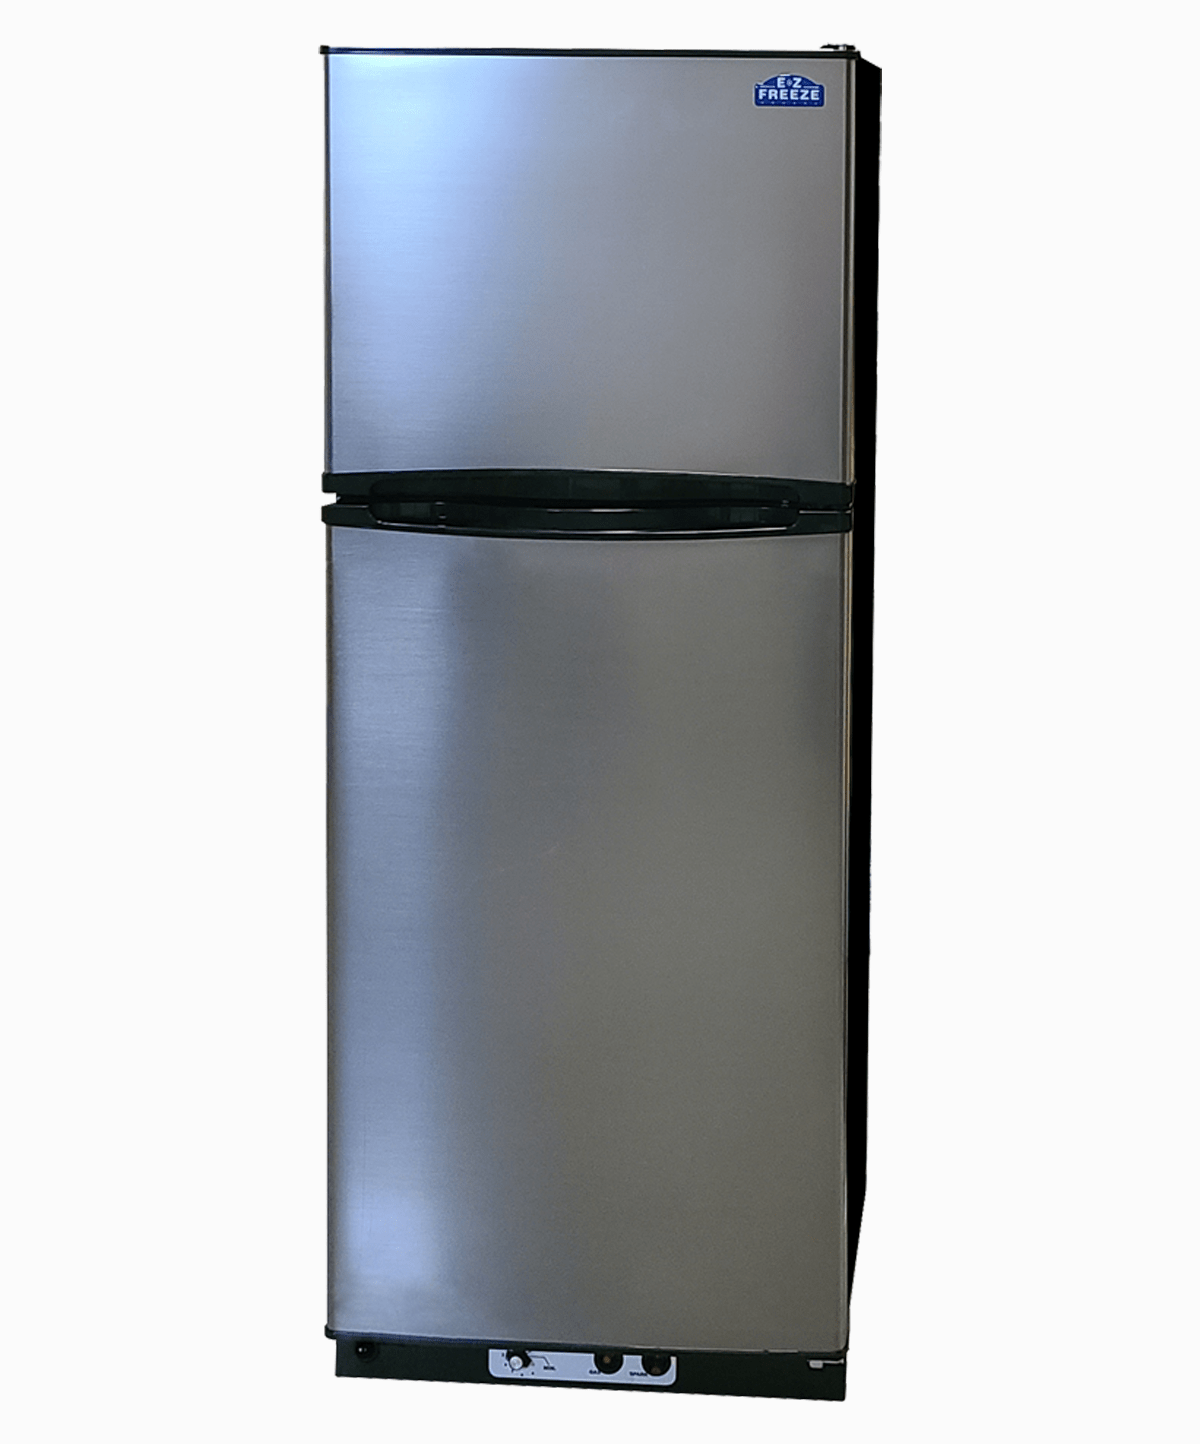 EZ Freeze Propane Refrigerator EZ Freeze 11 Cu. Ft. Stainless Steel Propane Gas Refrigerator EZ-1065SS